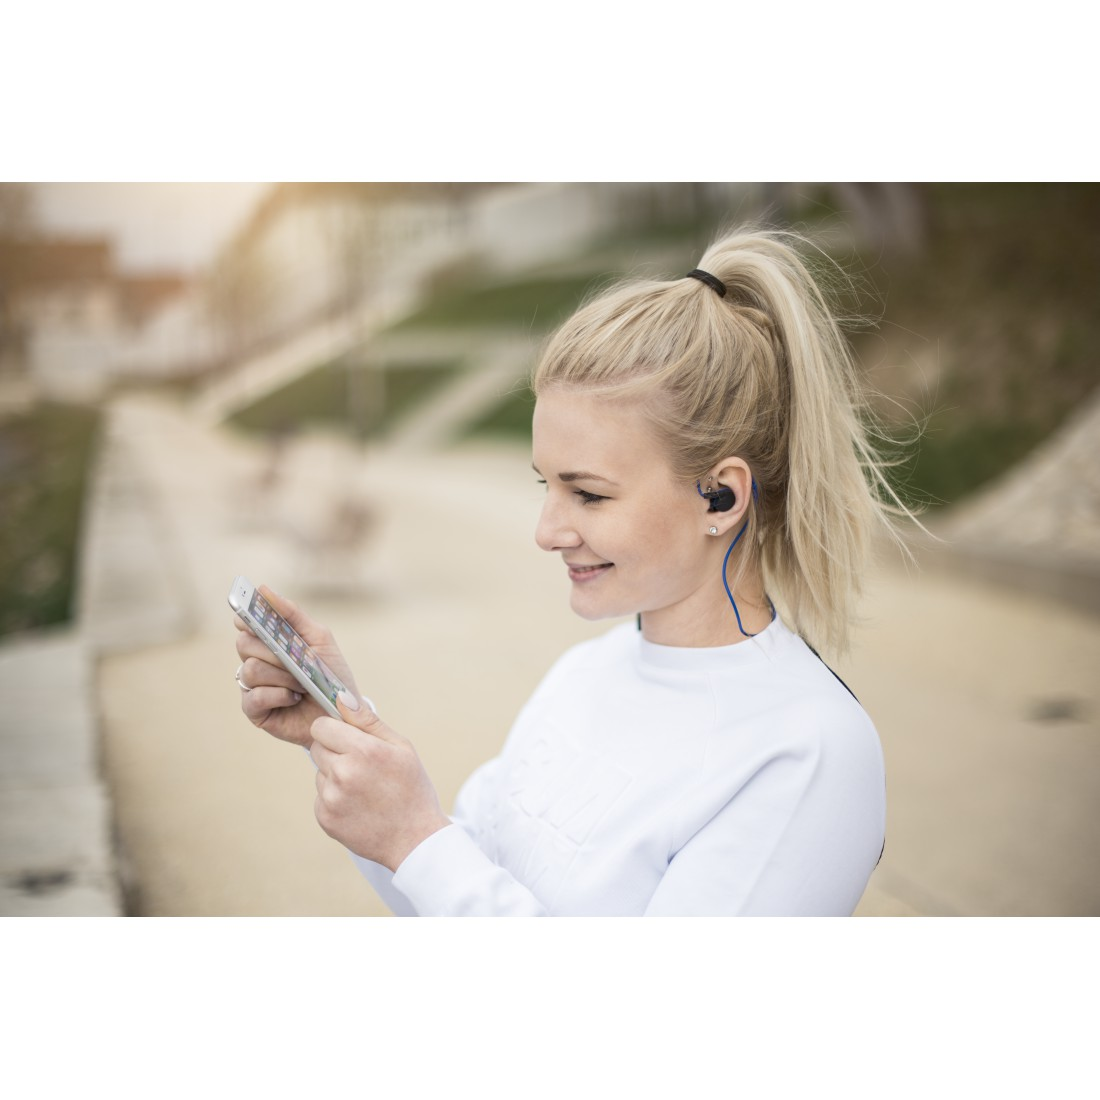 HAMA Freedom Athletics, In-ear Bluetooth Kopfhörer Schwarz/Blau